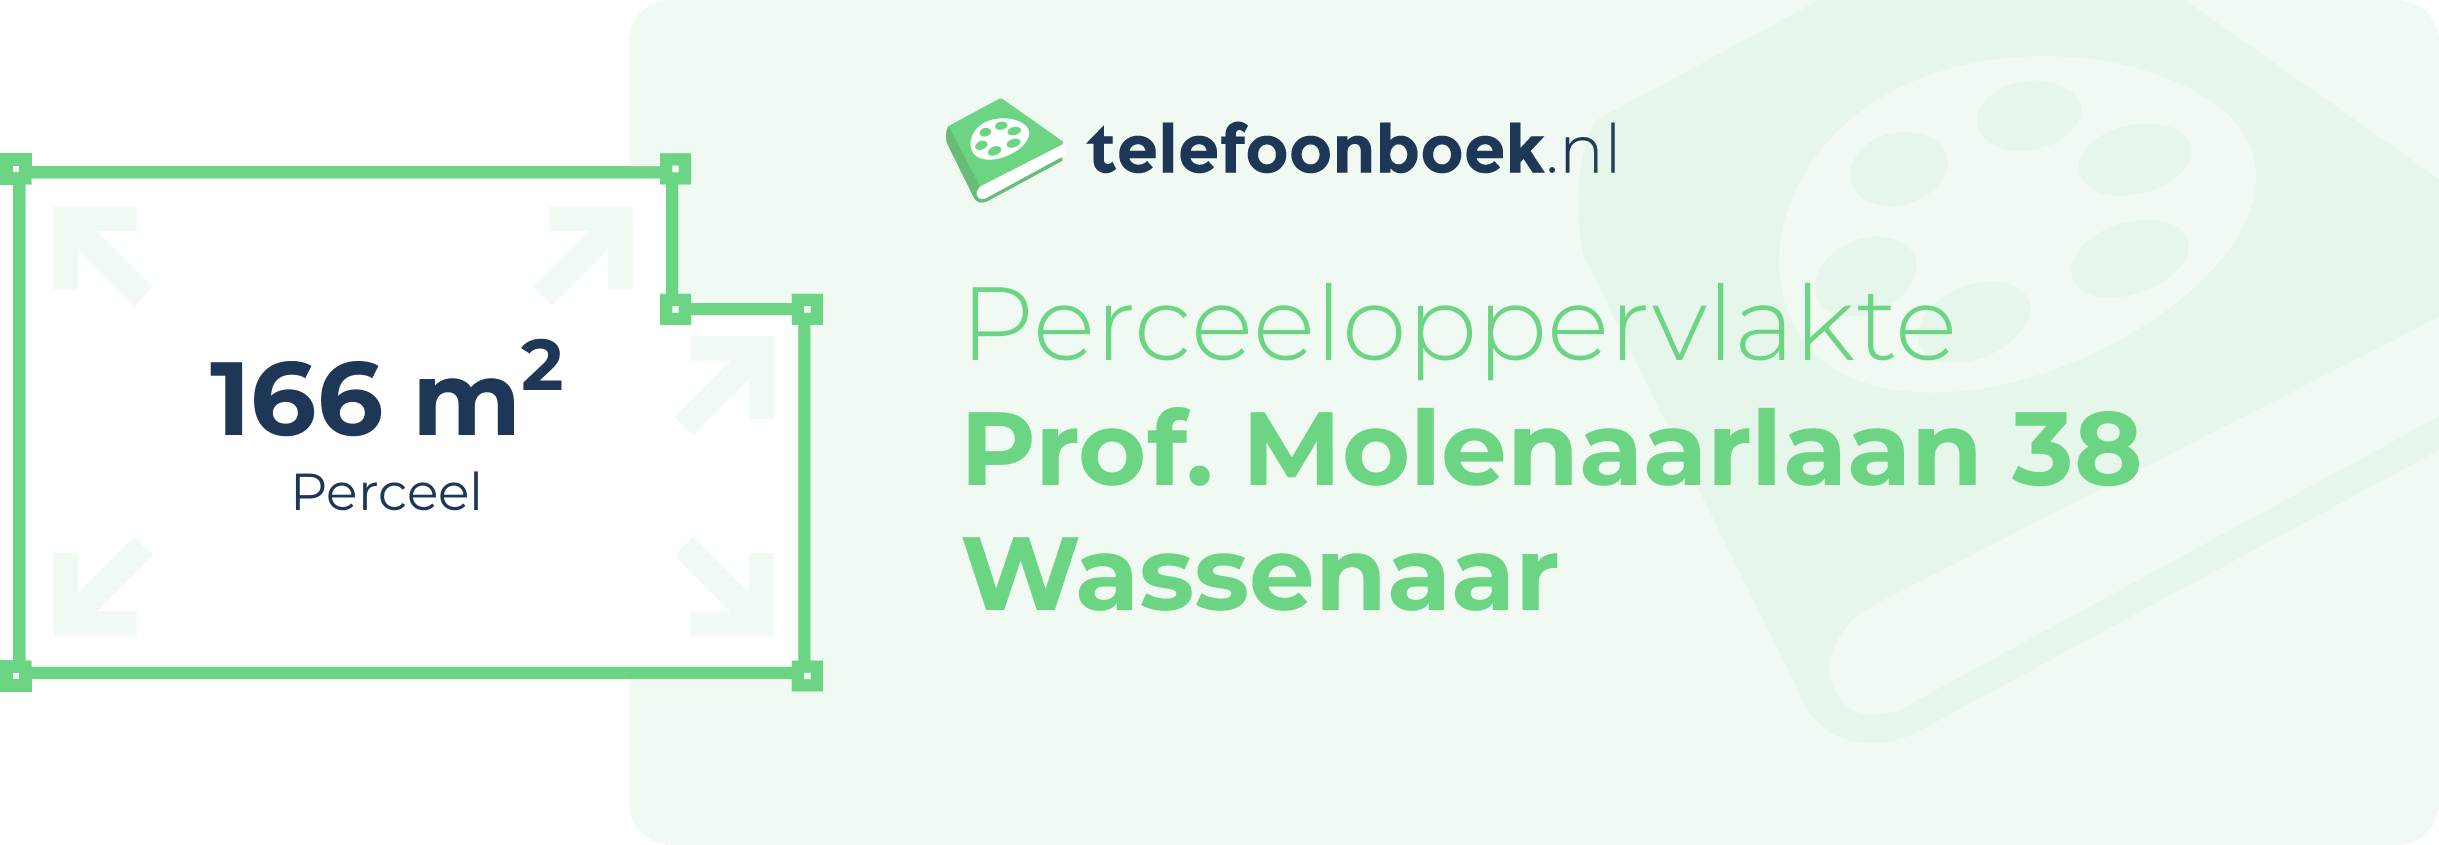 Perceeloppervlakte Prof. Molenaarlaan 38 Wassenaar